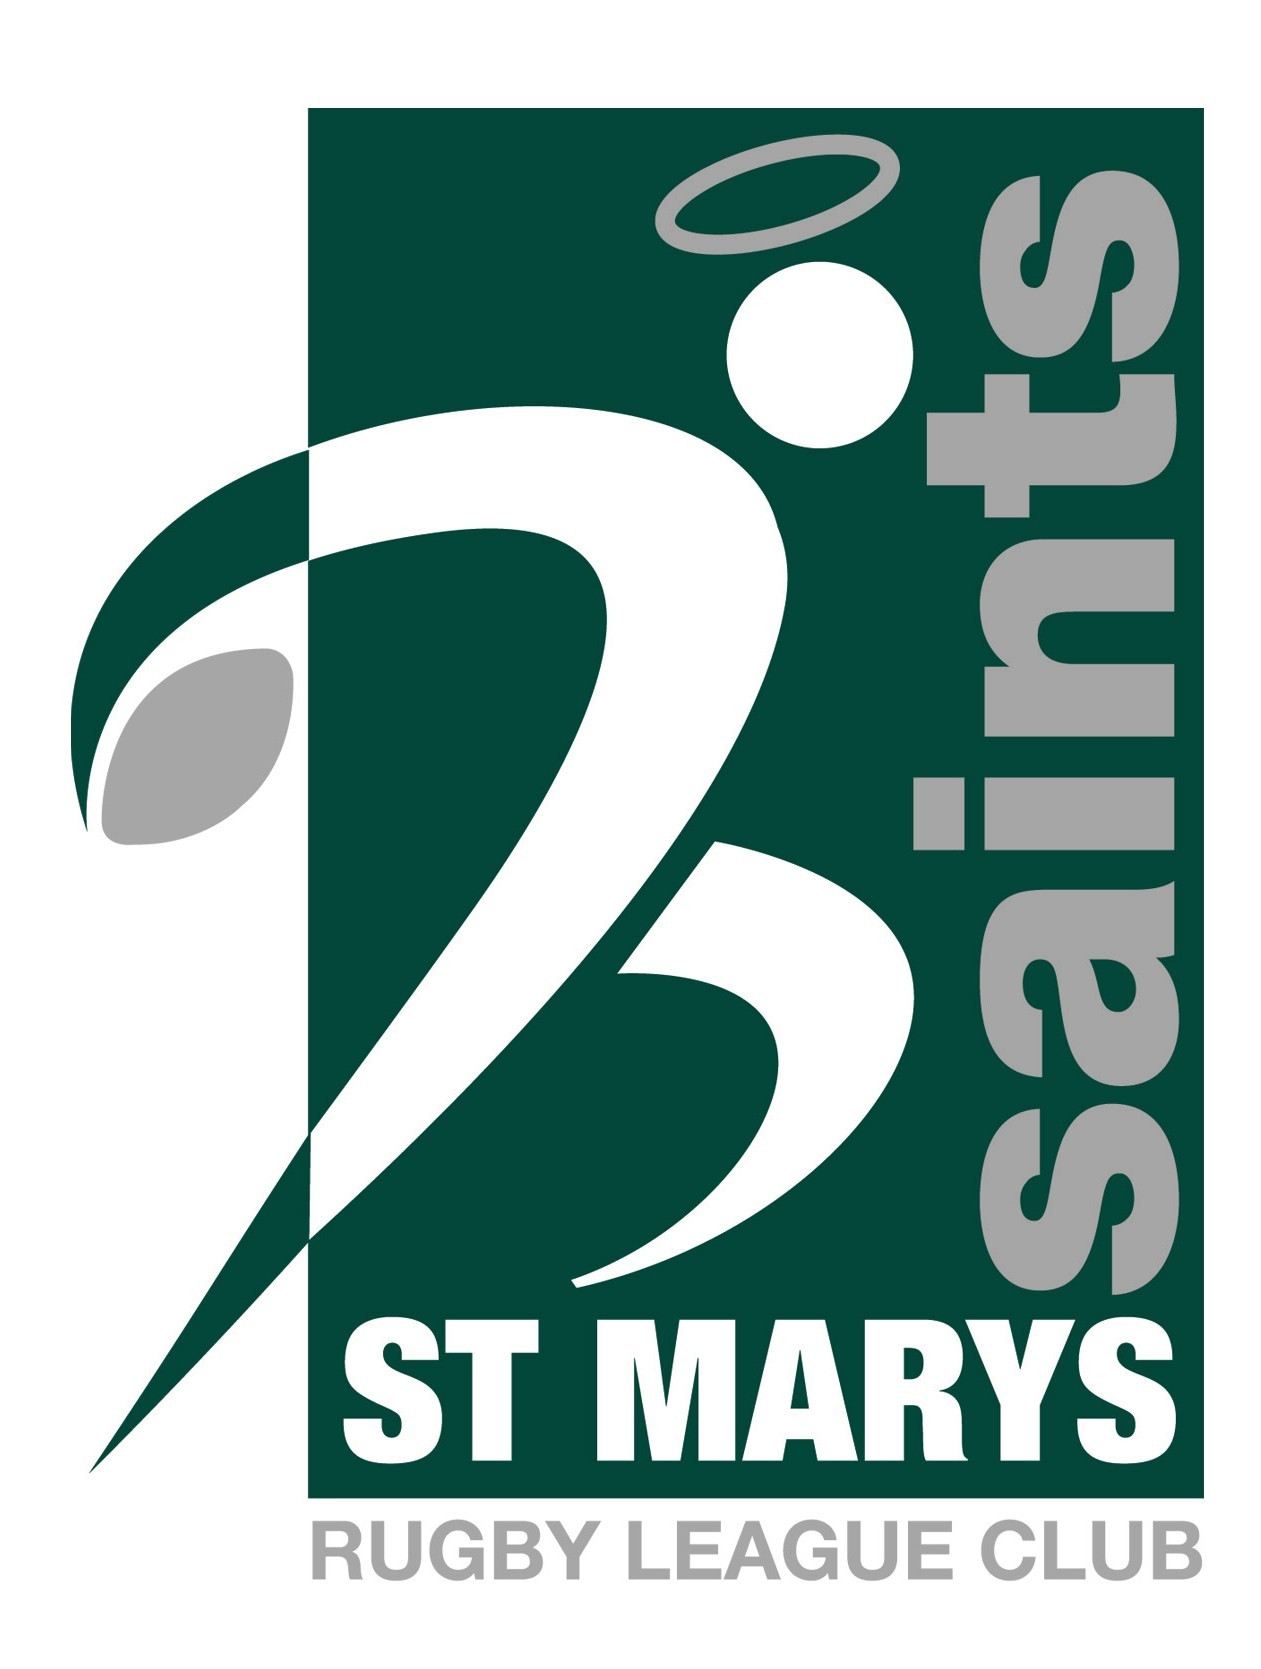 St Marys Rugby League Club